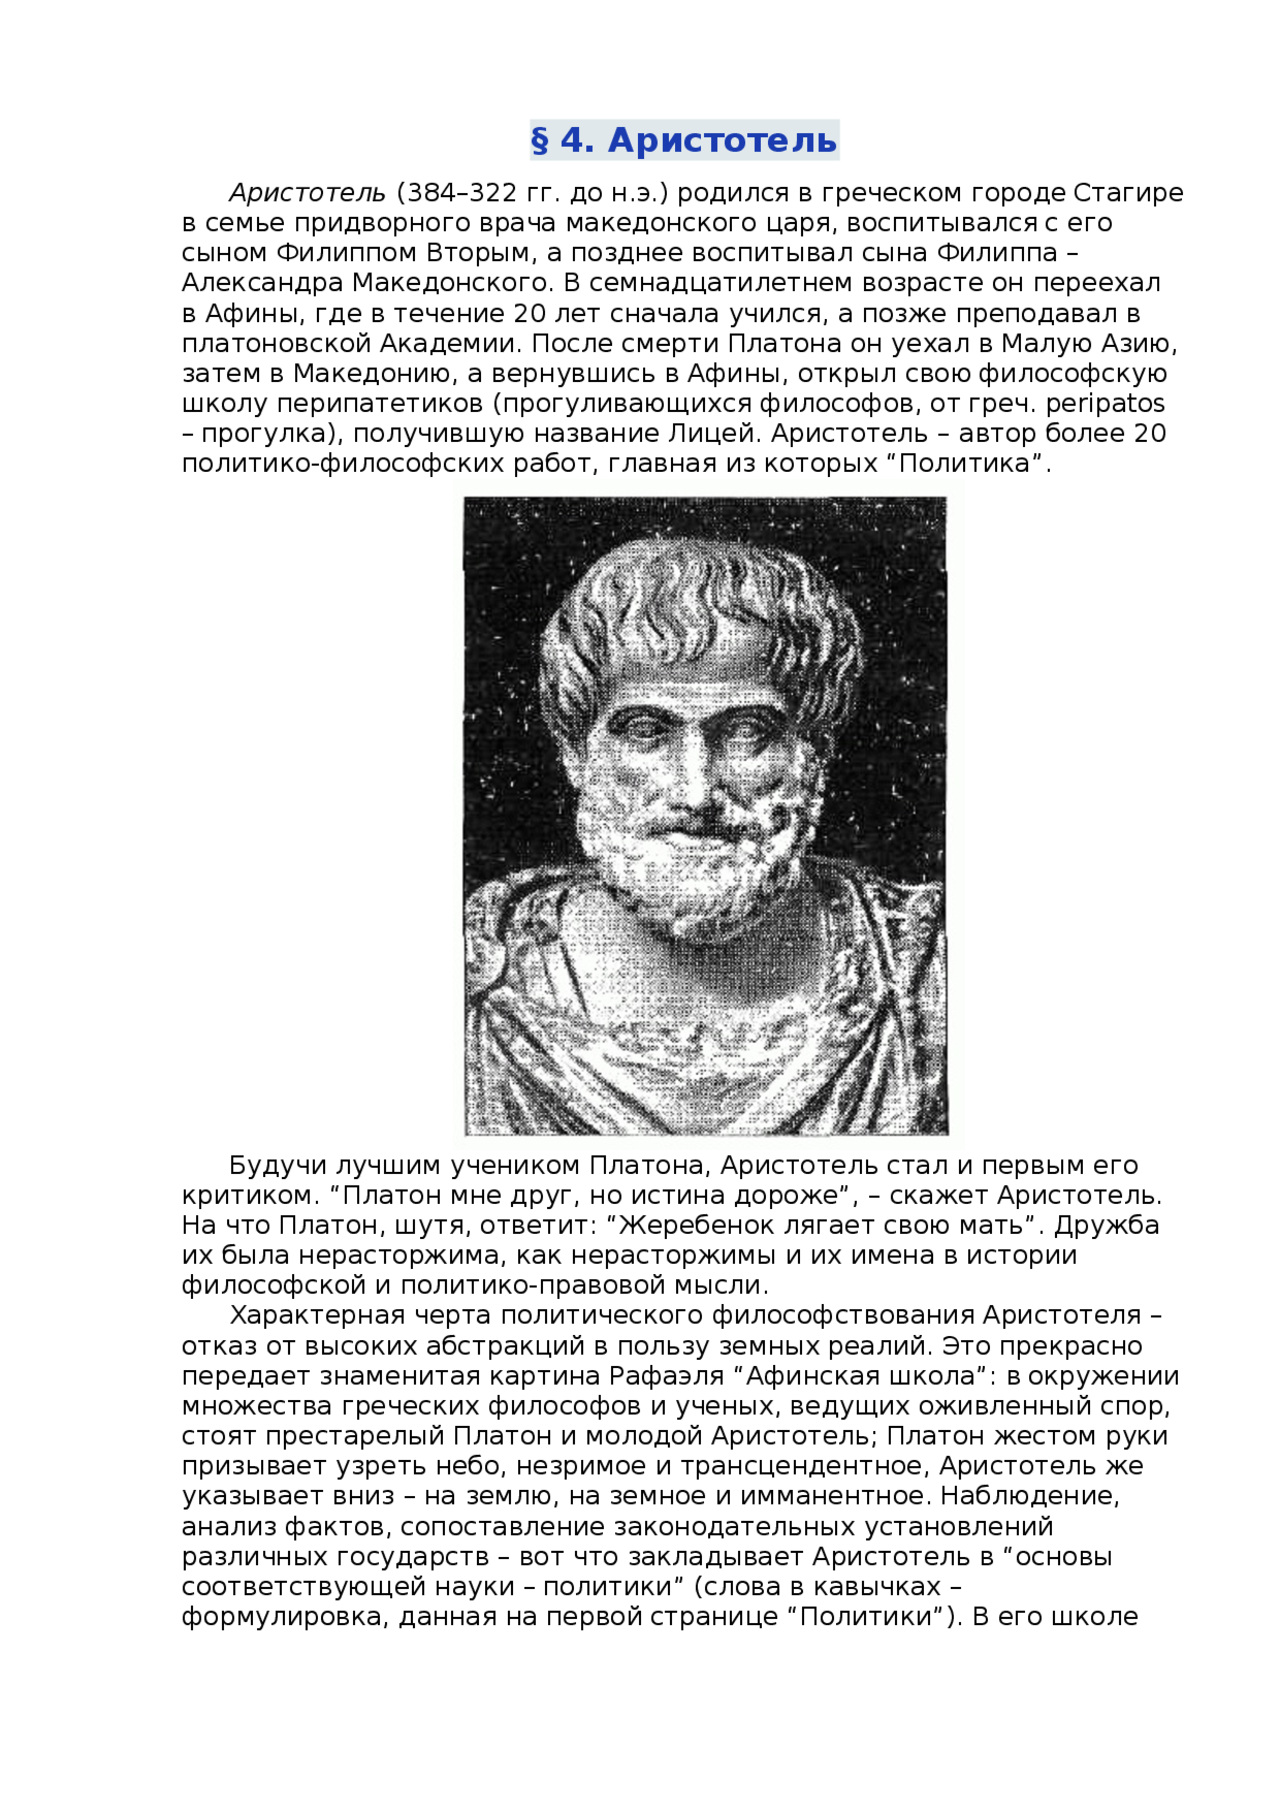 Аристотель и Платон: между дружбой и истиной